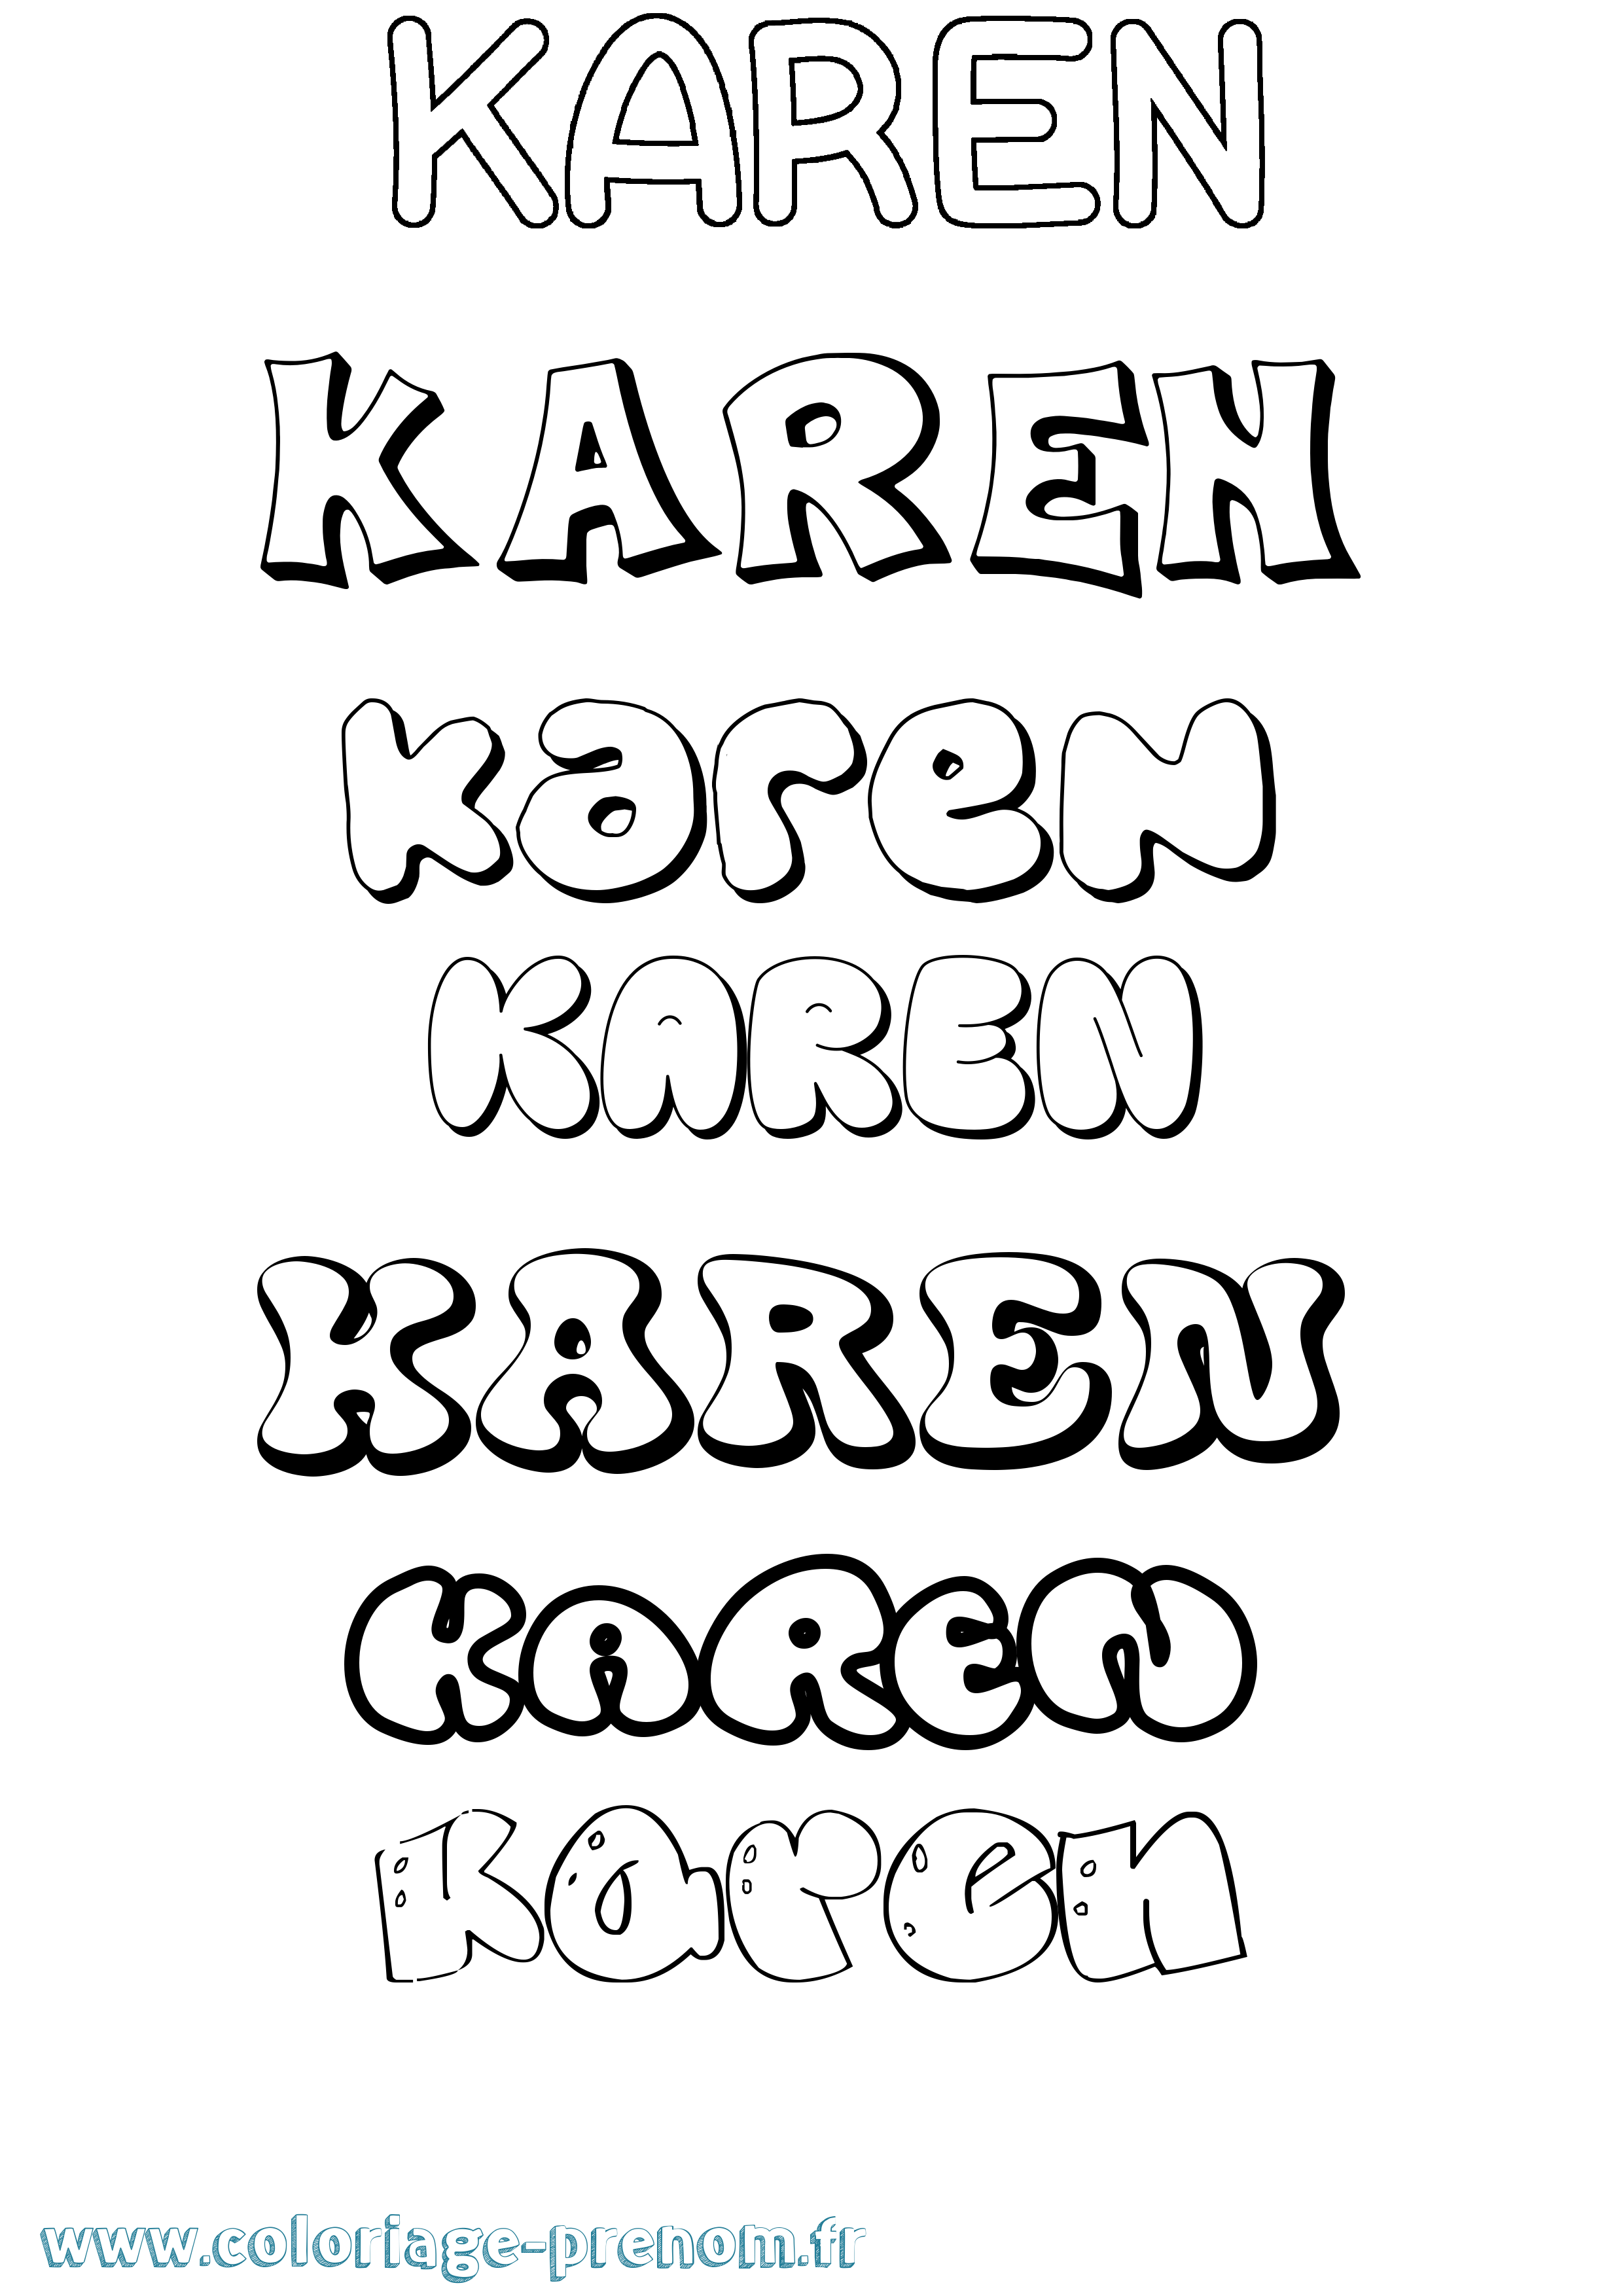 Coloriage prénom Karen Bubble